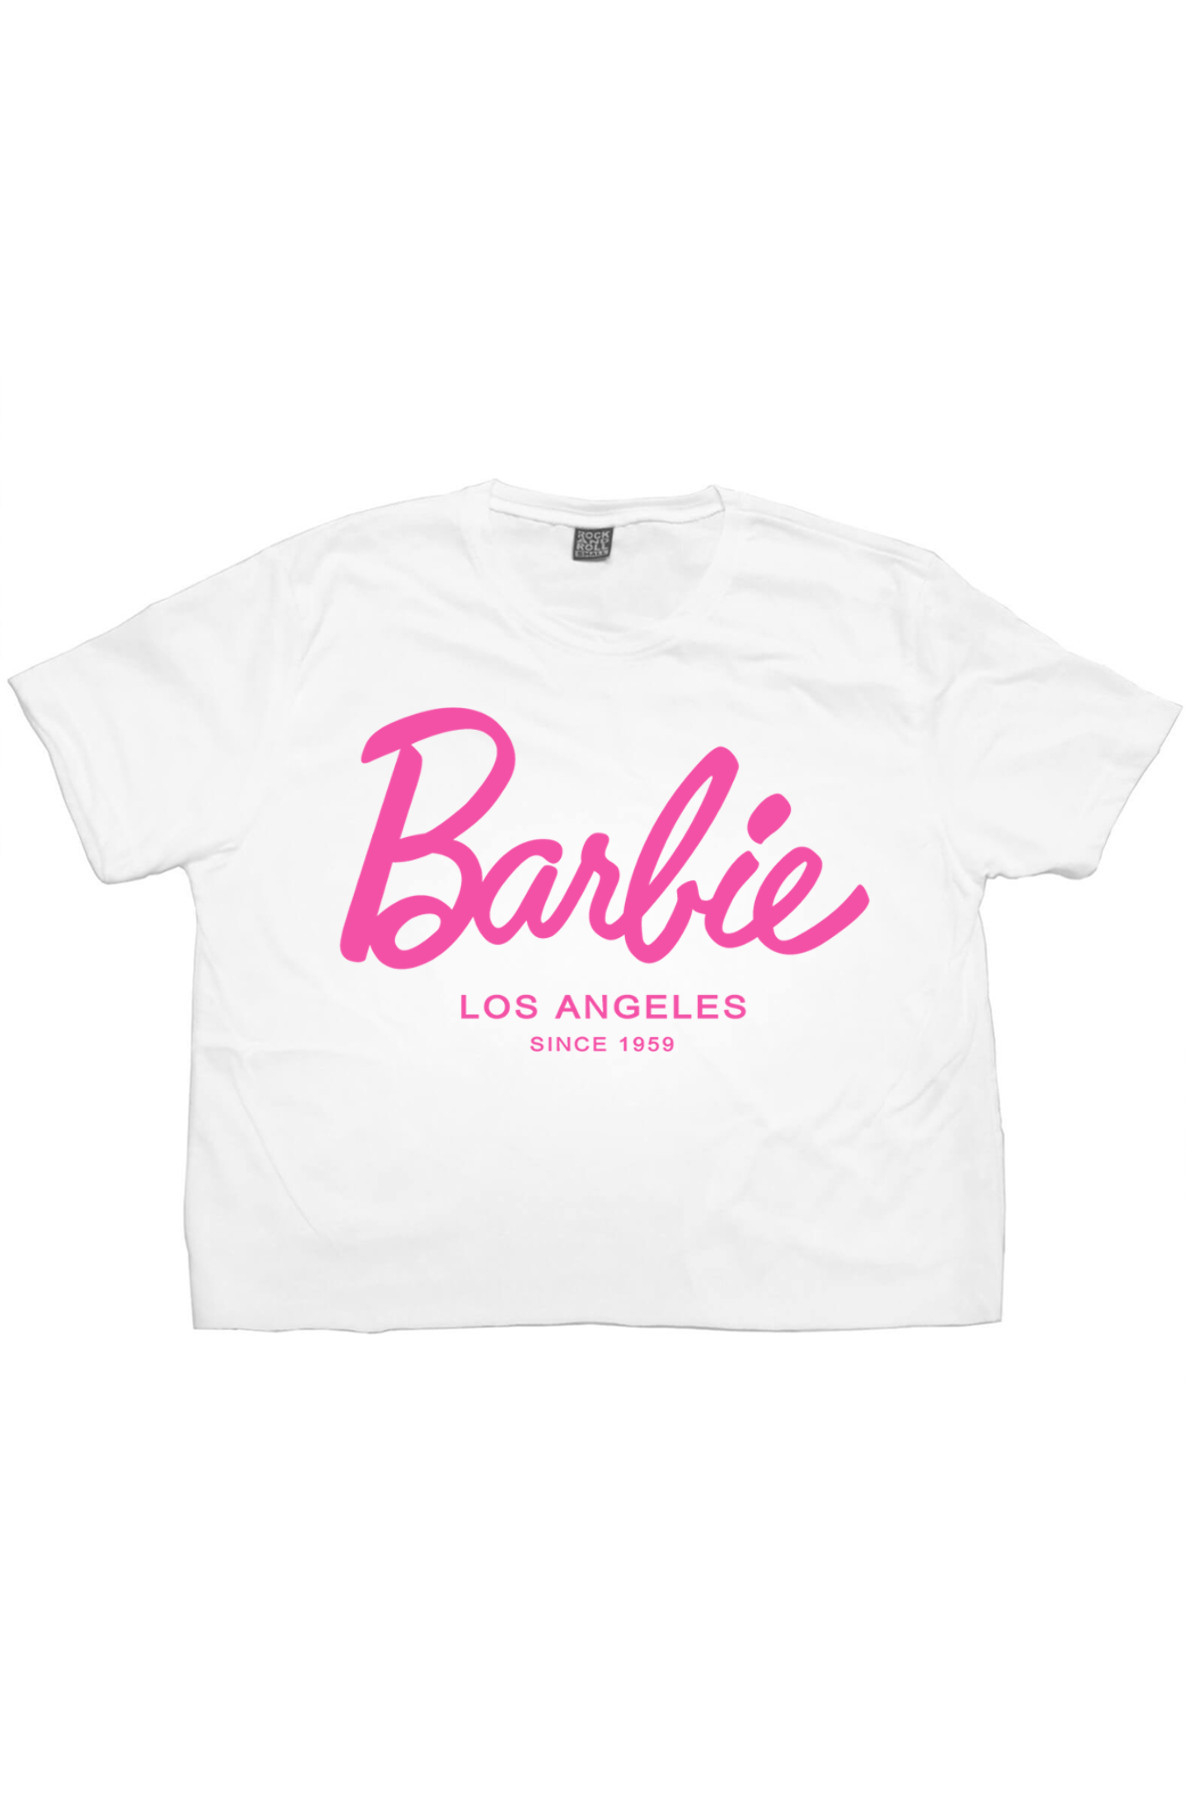 Barbie Beyaz Kısa, Kesik Crop Top Kadın T-shirt